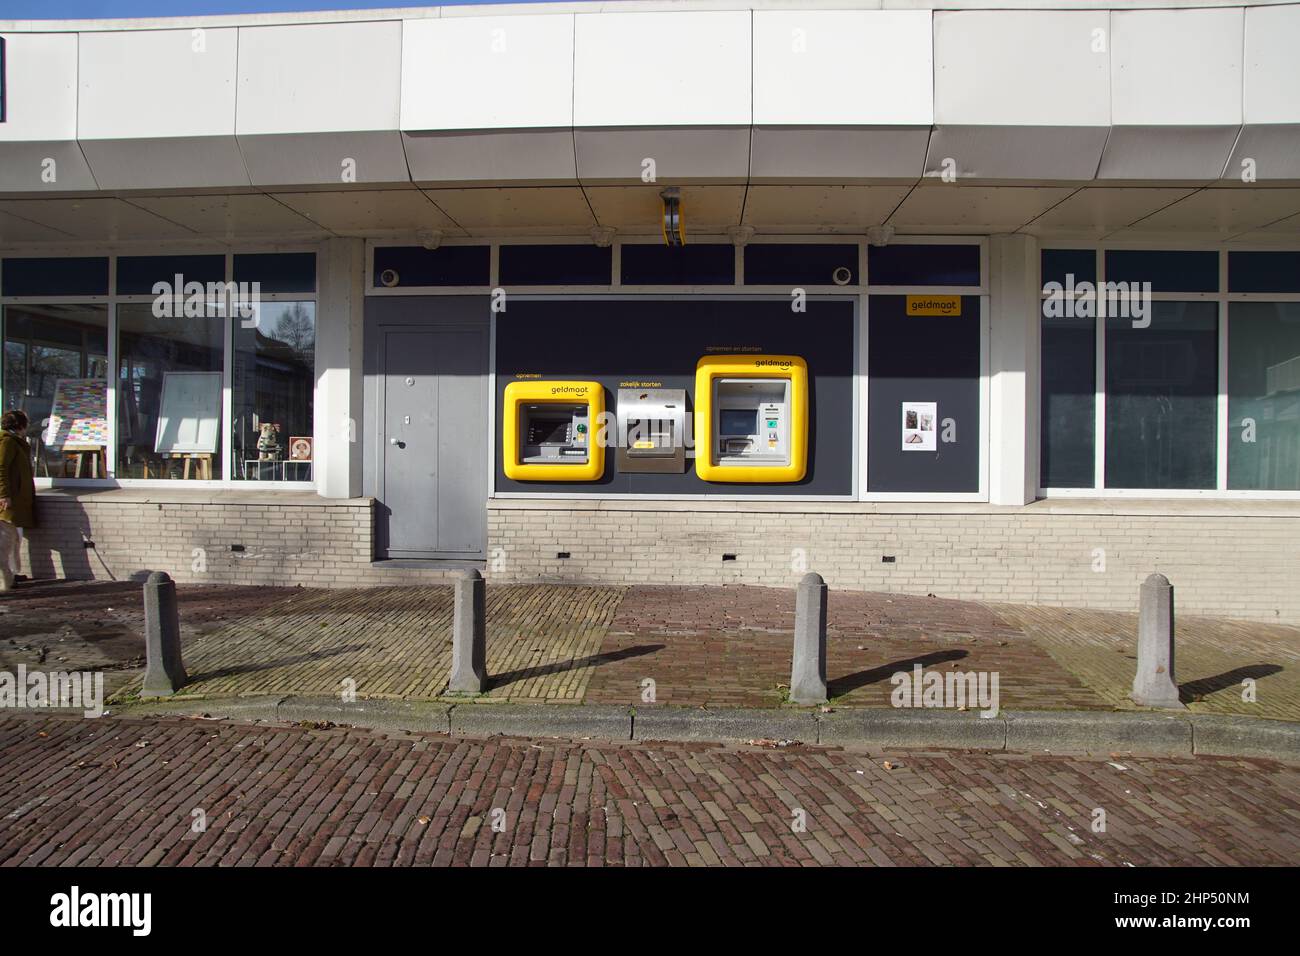 Cashpoint (bancomat, bancomat, bancomat) chiamato Geldmaat per tutte le banche olandesi (ABN AMRO, ING, Rabobank) con un bordo giallo nel villaggio Foto Stock